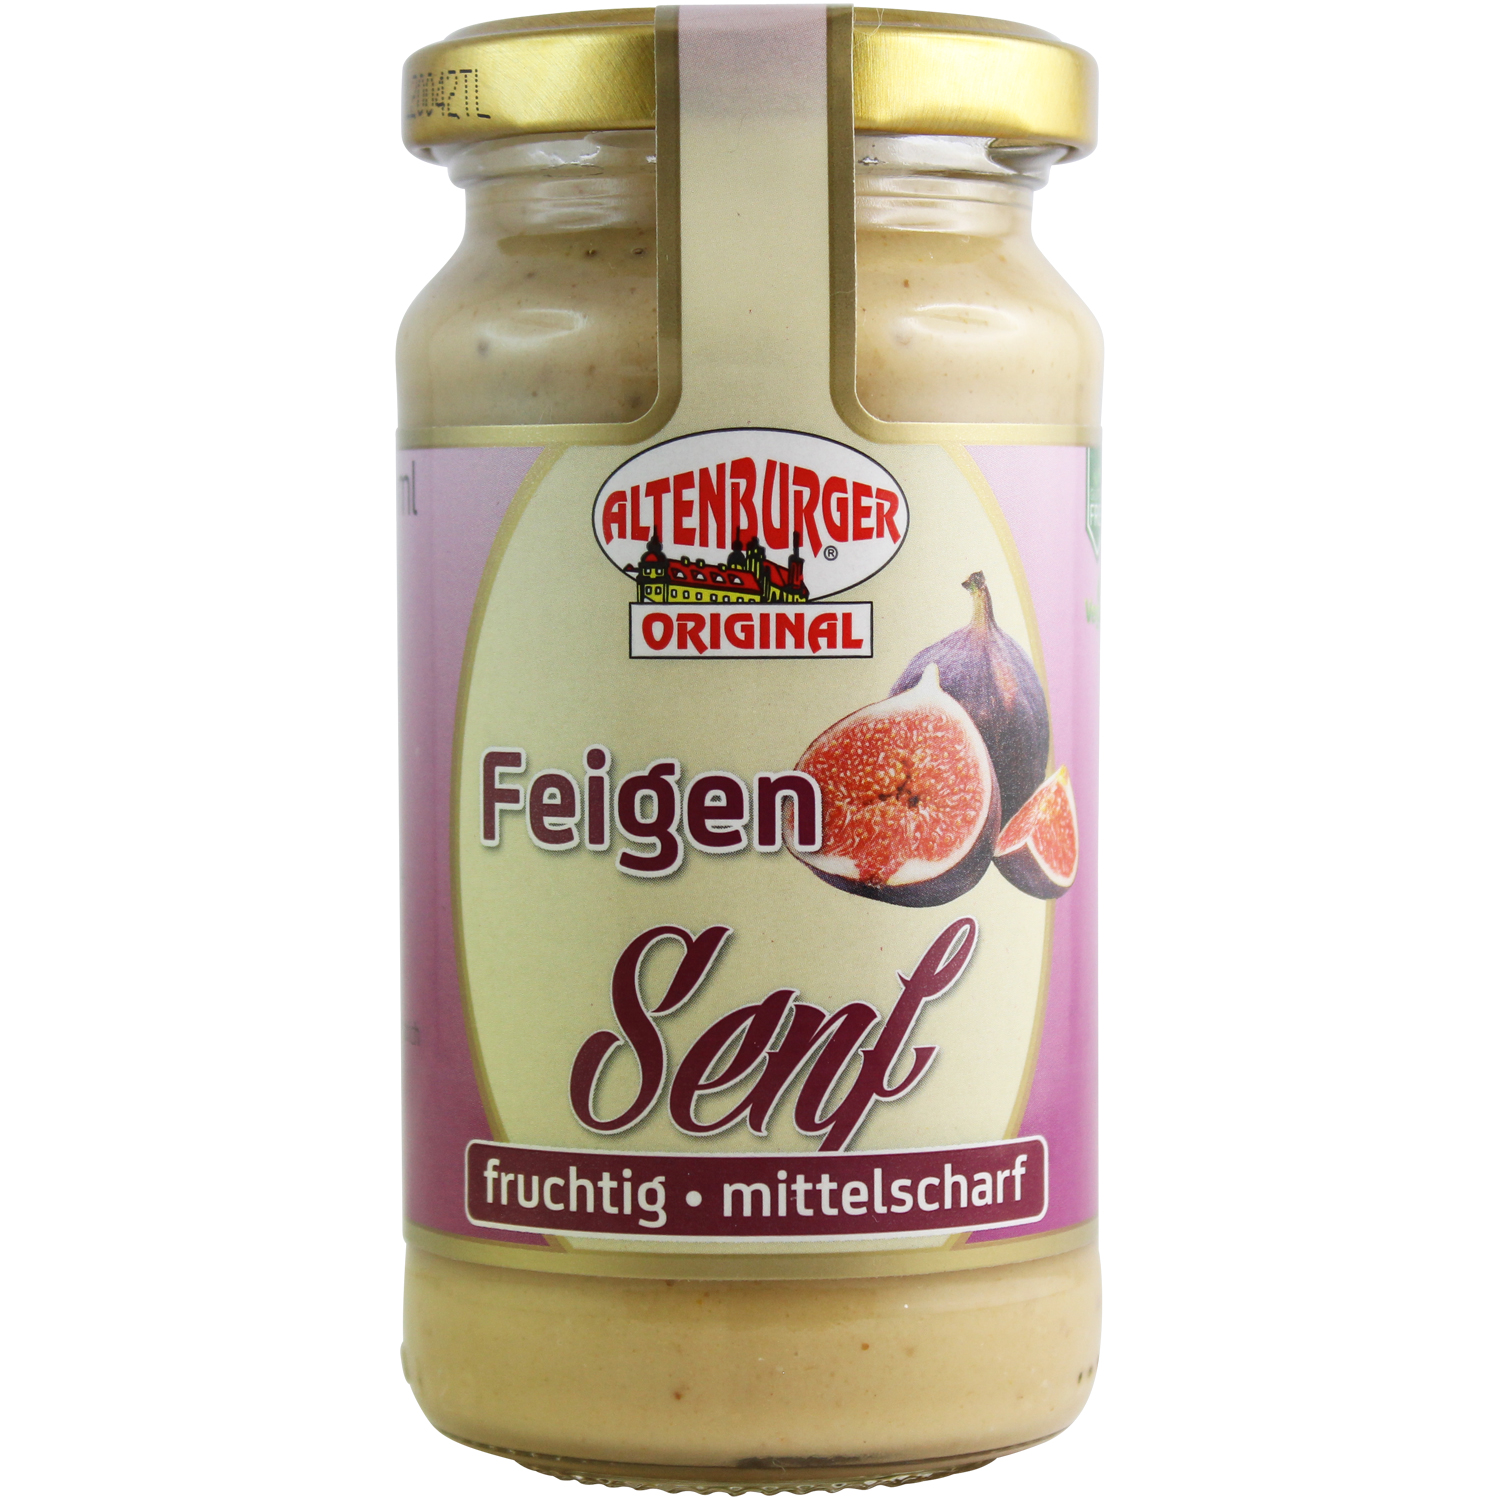 Ossikiste.de | Altenburger Feigen Senf 200 ml | online kaufen